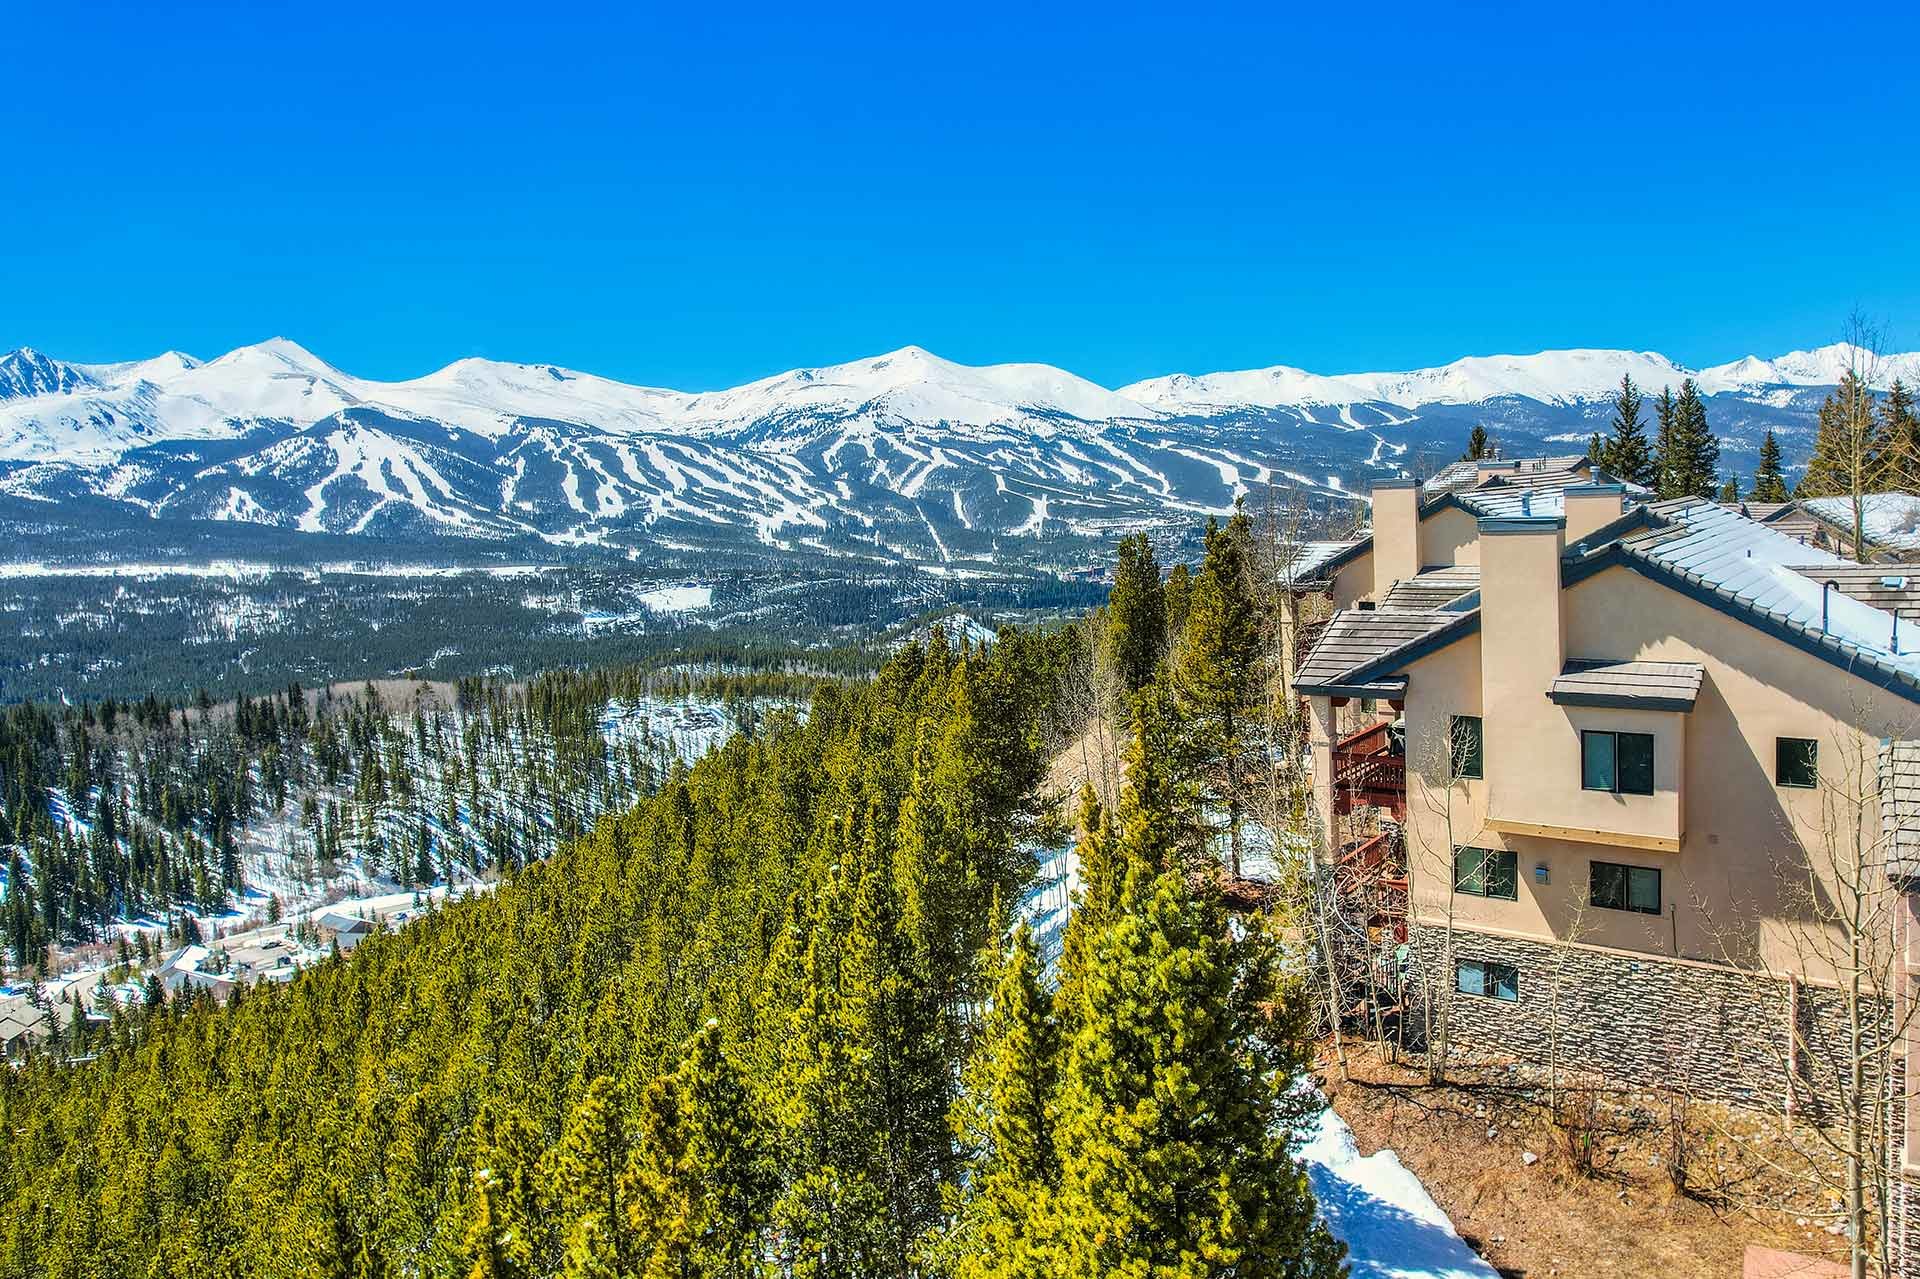 Charter Ridge Townhome with Ski Area Views for Sale in Breckenridge, Colorado by Breckenridge Associates